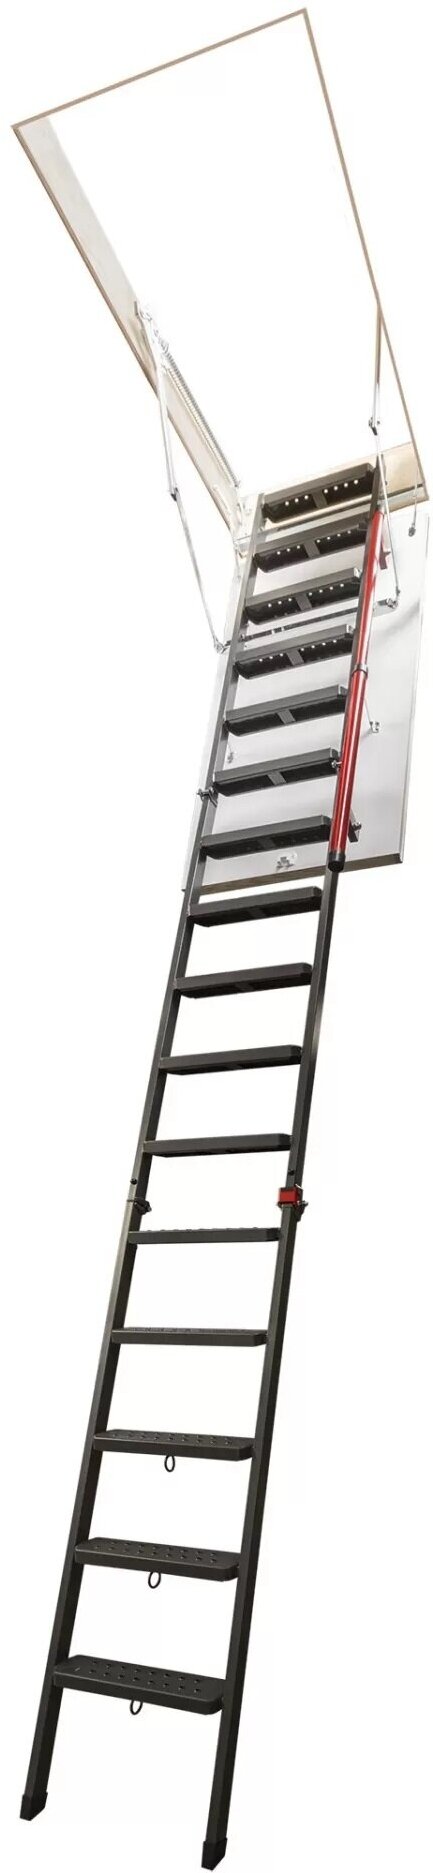 Чердачная лестница с люком FAKRO LMP для высоких потолков 70*144*366